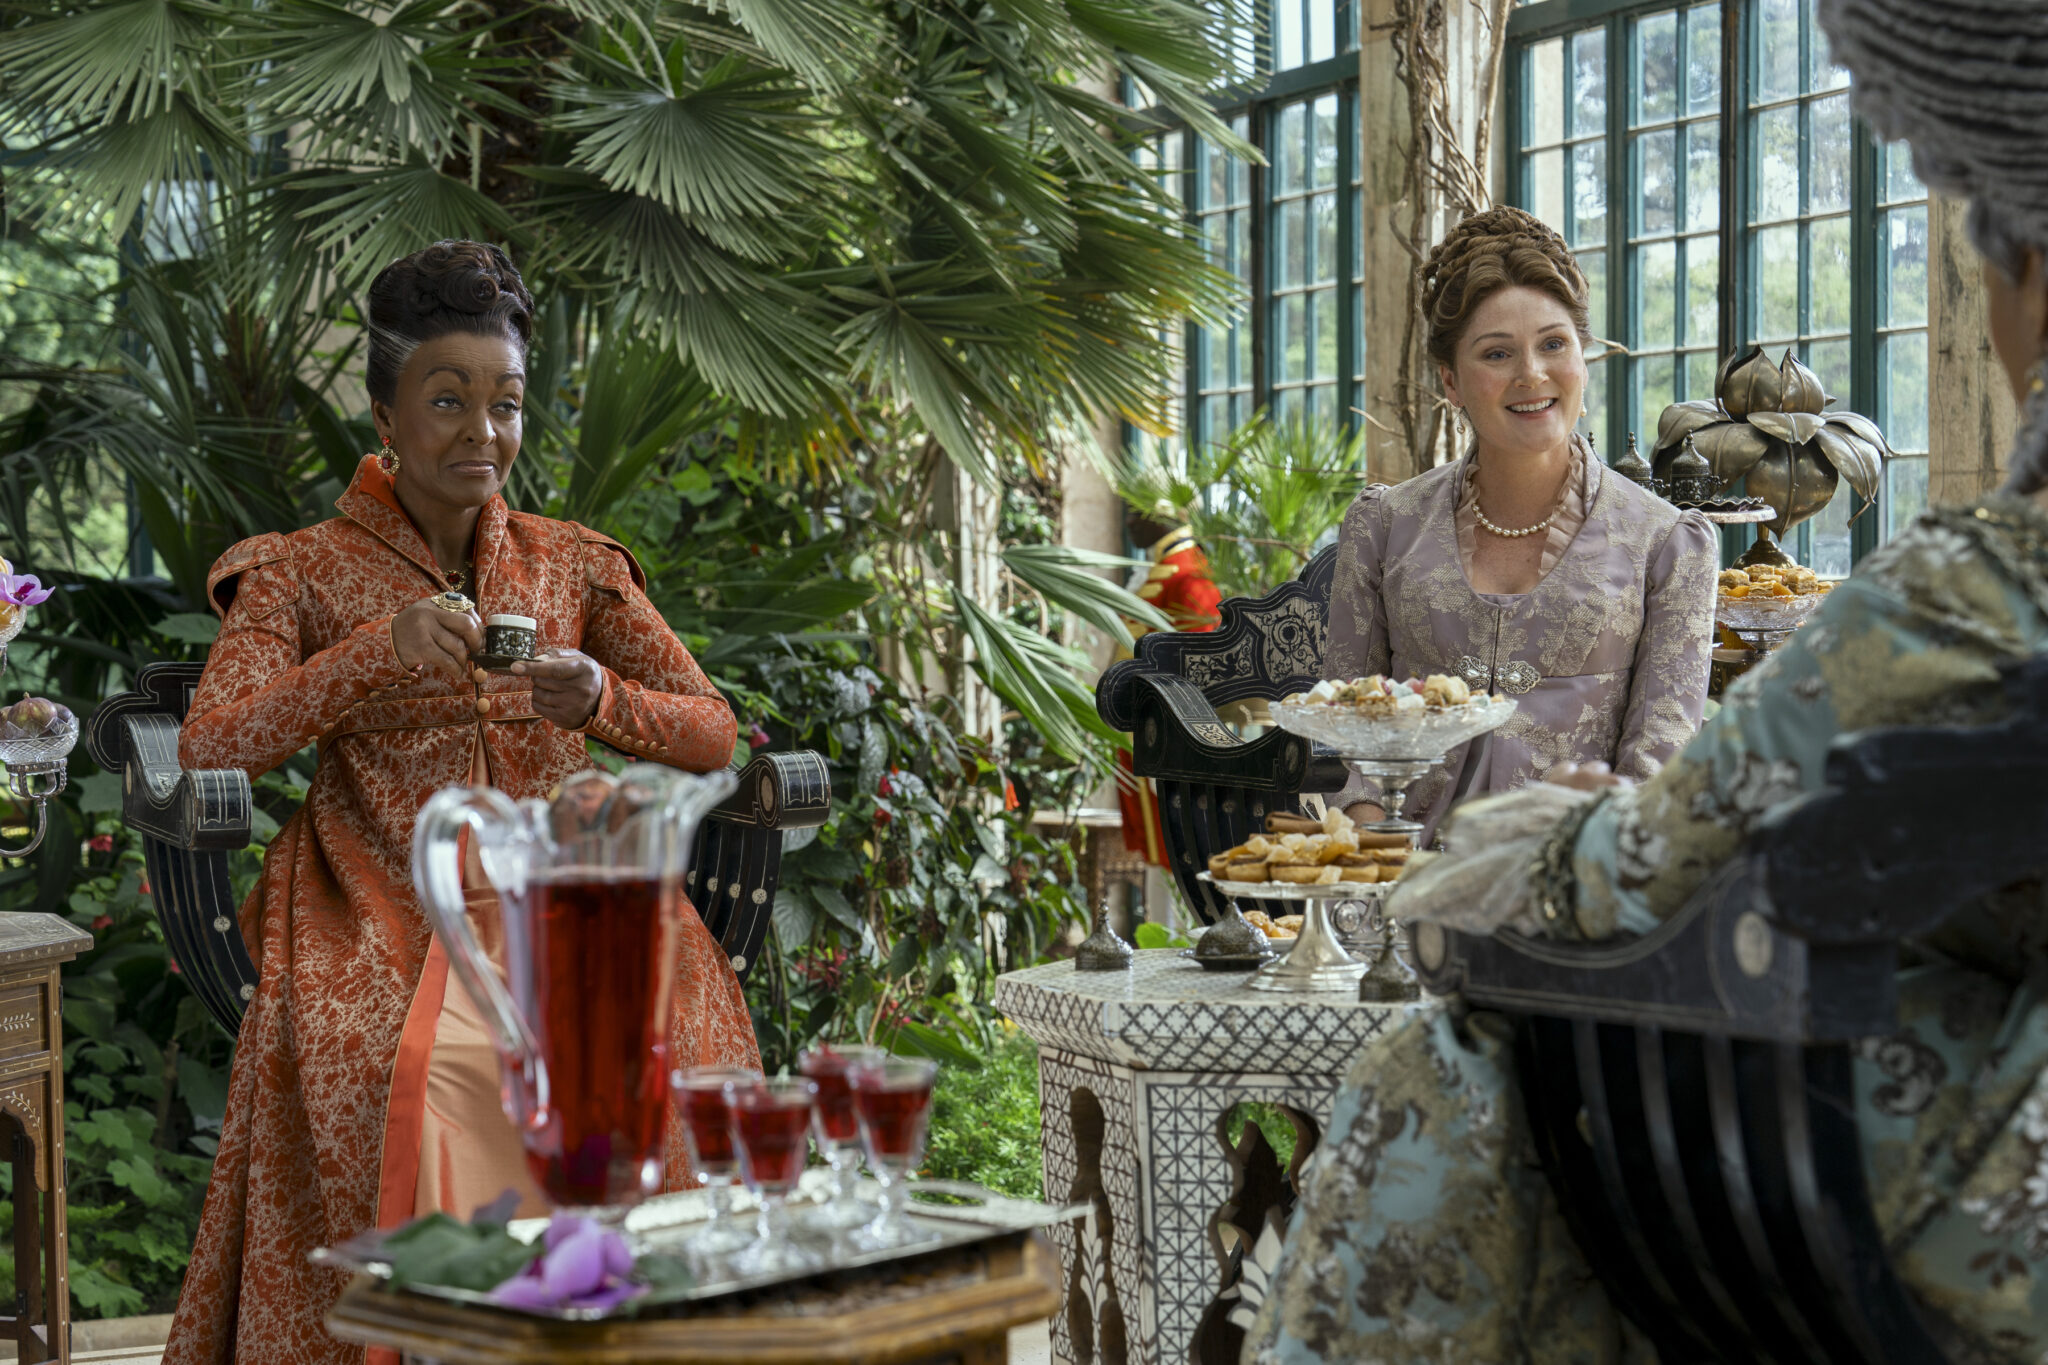 Adjoa Andoh als Lady Agatha Danbury, Ruth Gemmell als Lady Violet Bridgerton in einem Wintergarten beim Tee.